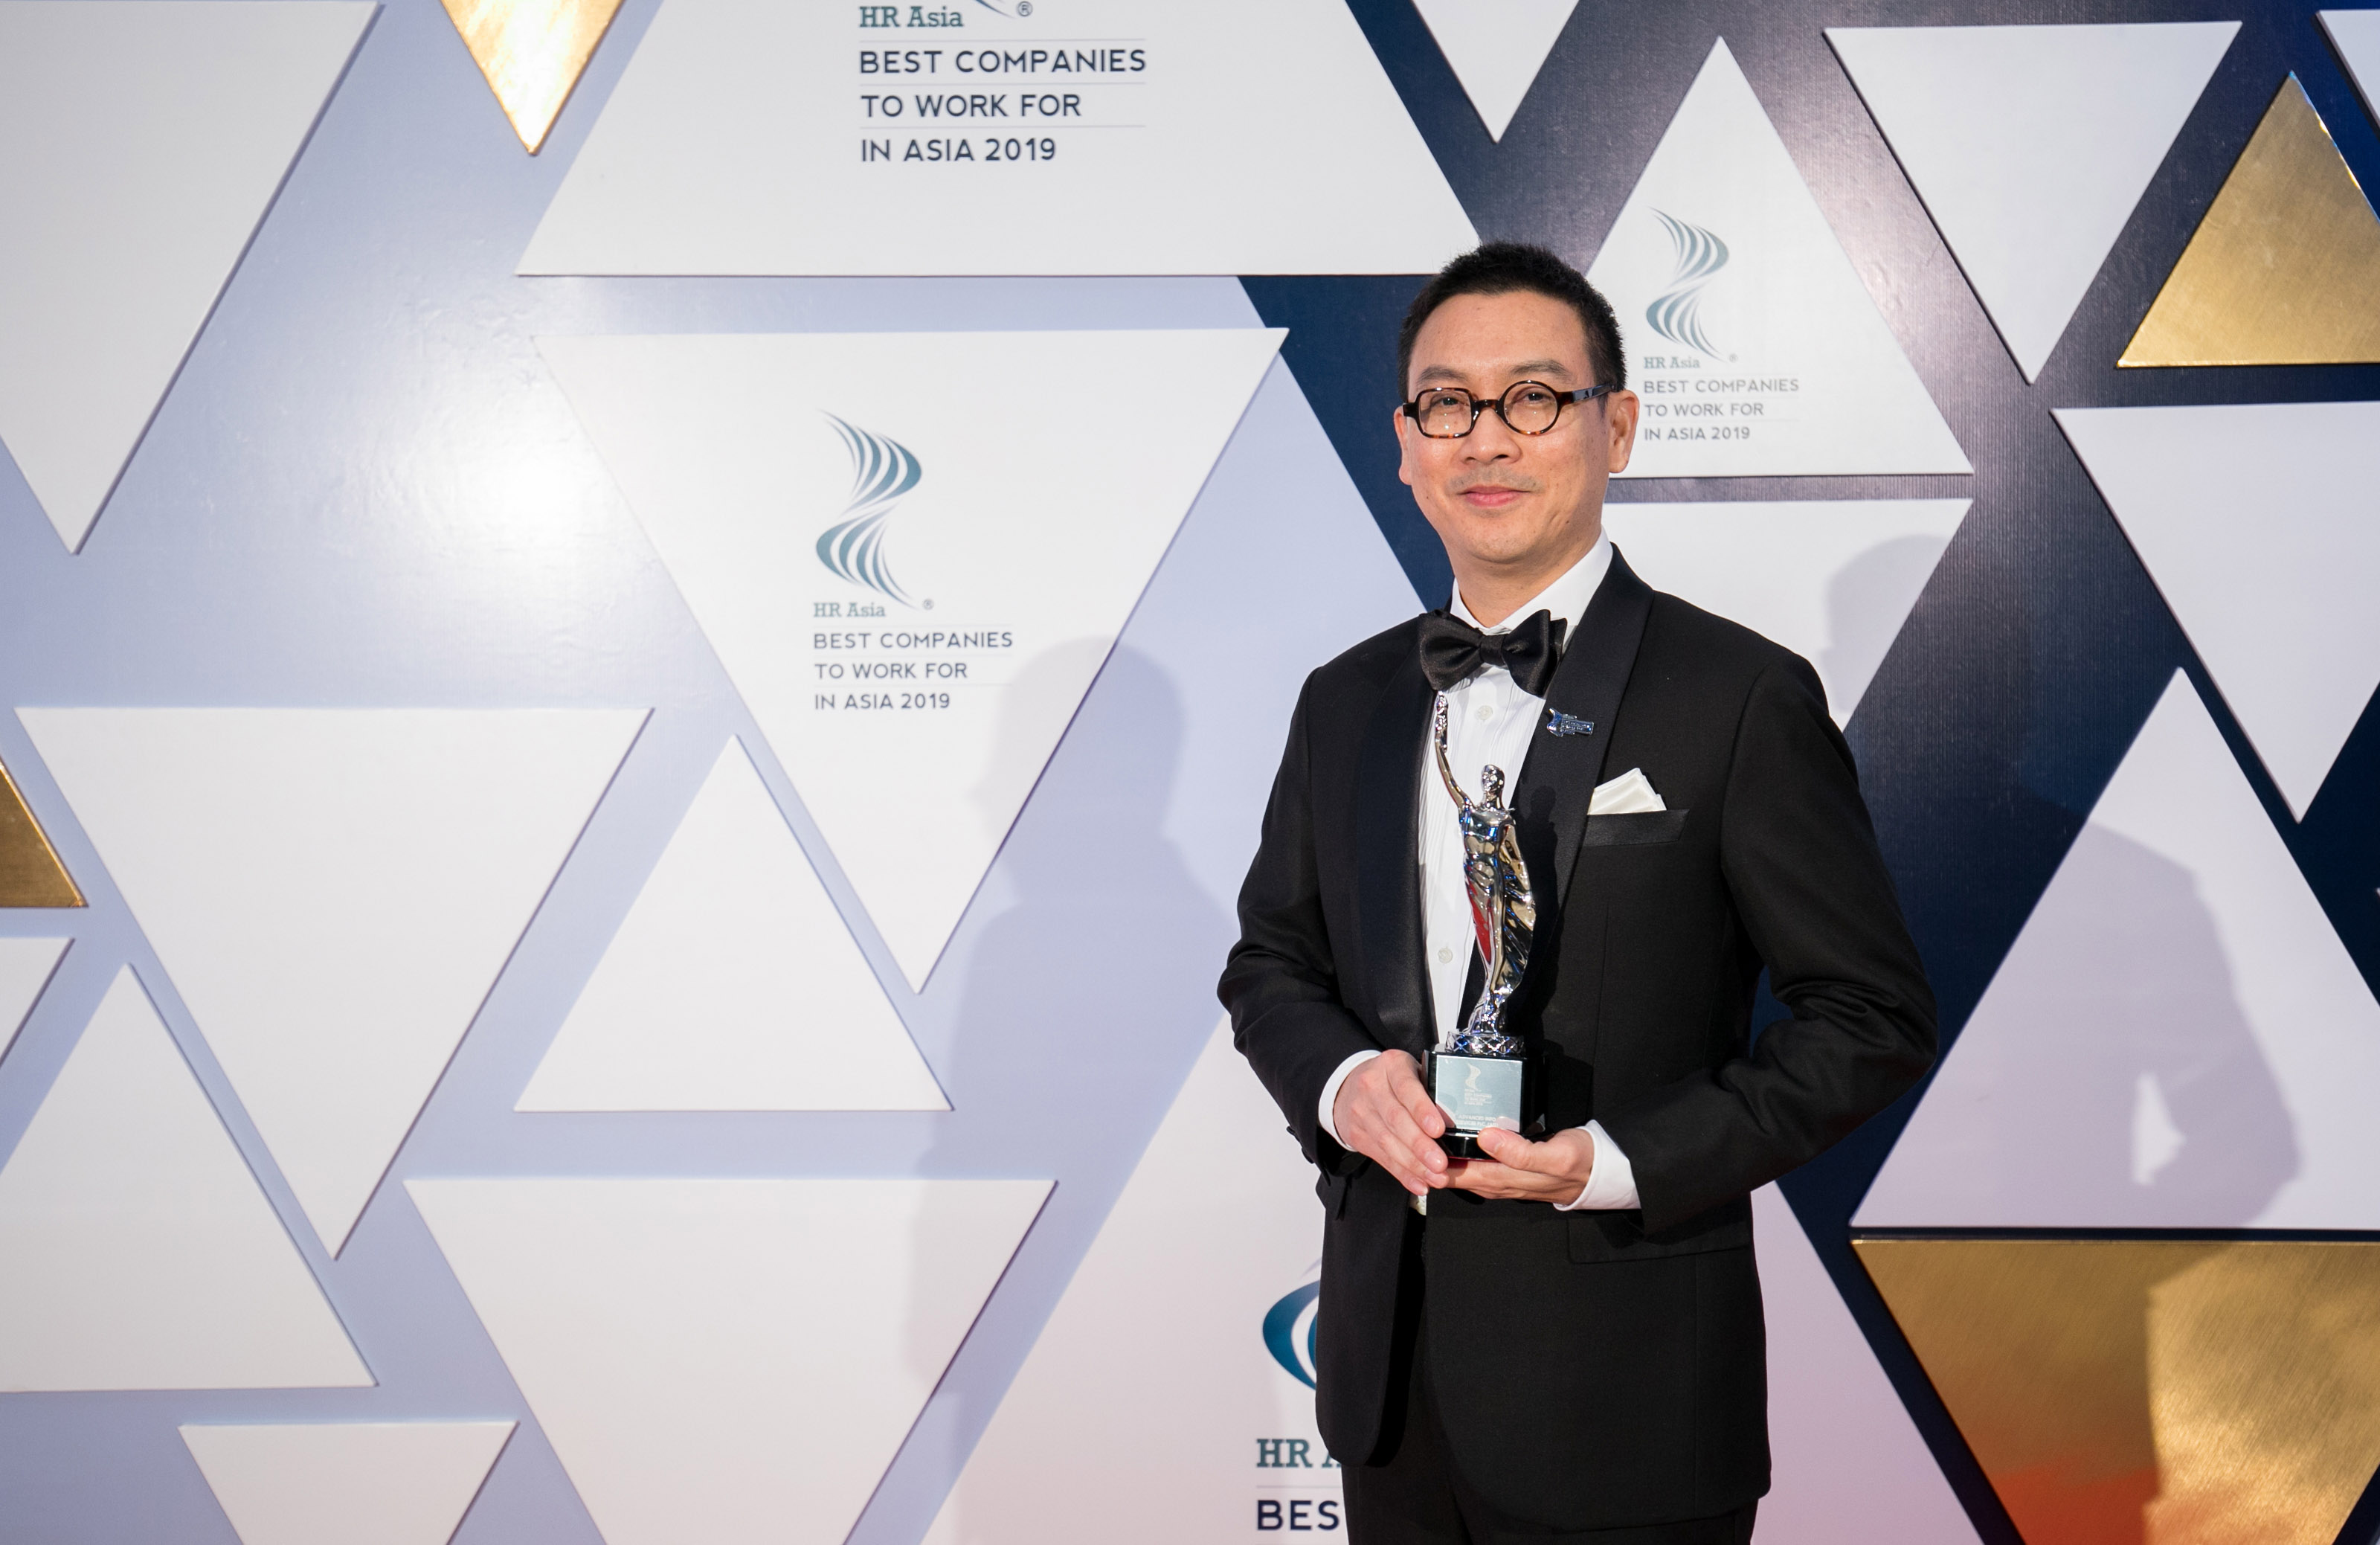 เอไอเอส คว้ารับรางวัล “องค์กรที่น่าทำงานมากที่สุดในเอเชีย” 2019 จากการจัดอันดับของ HR Asia